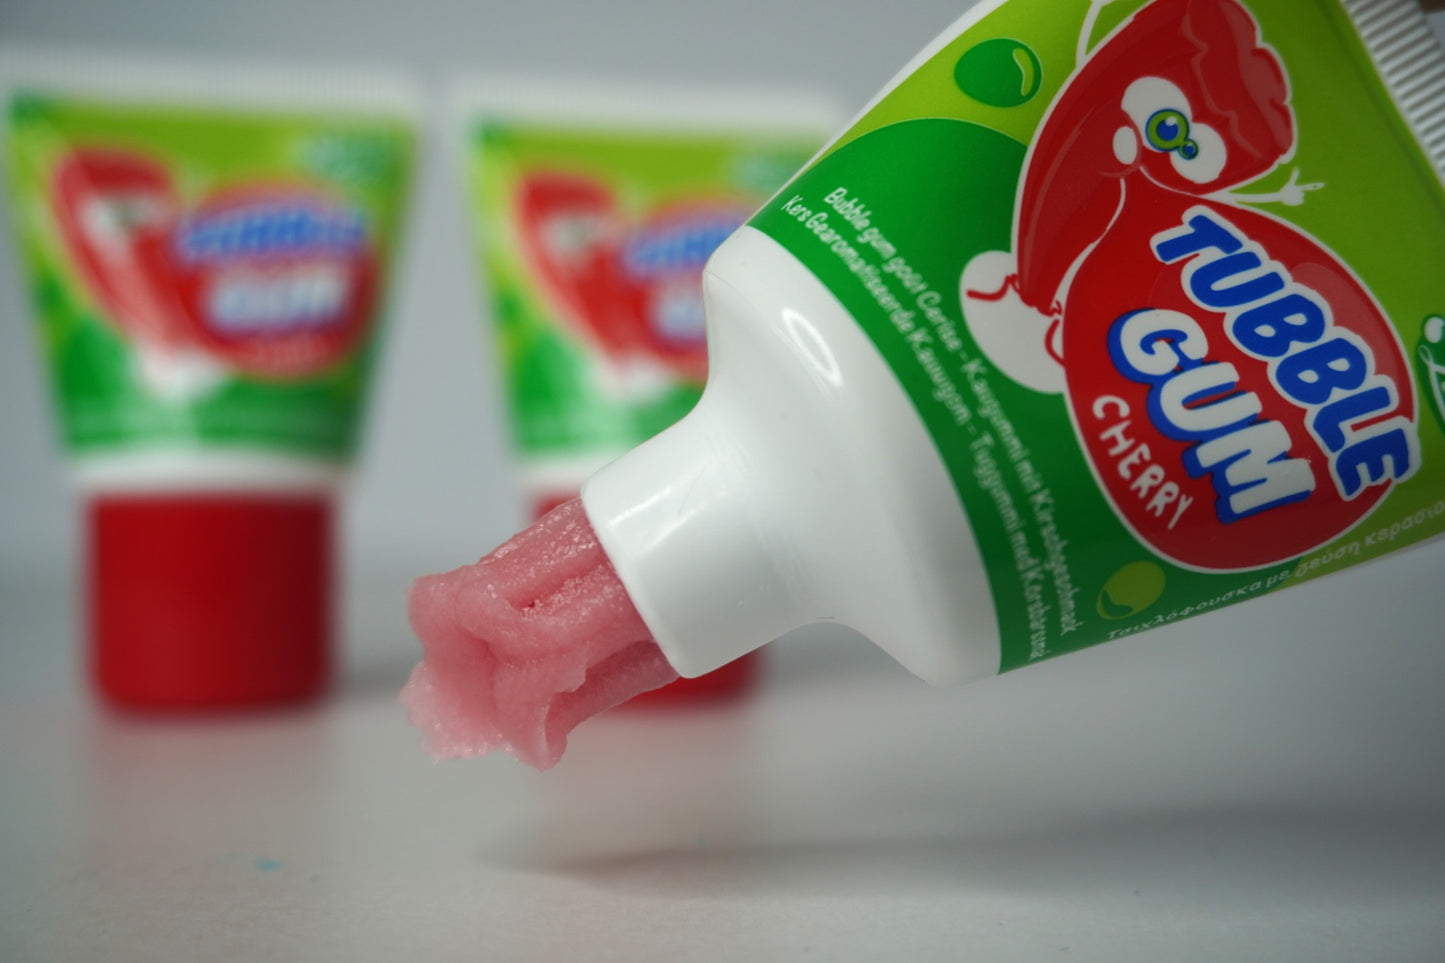 Tubble Gum Cherry 3 Count Box